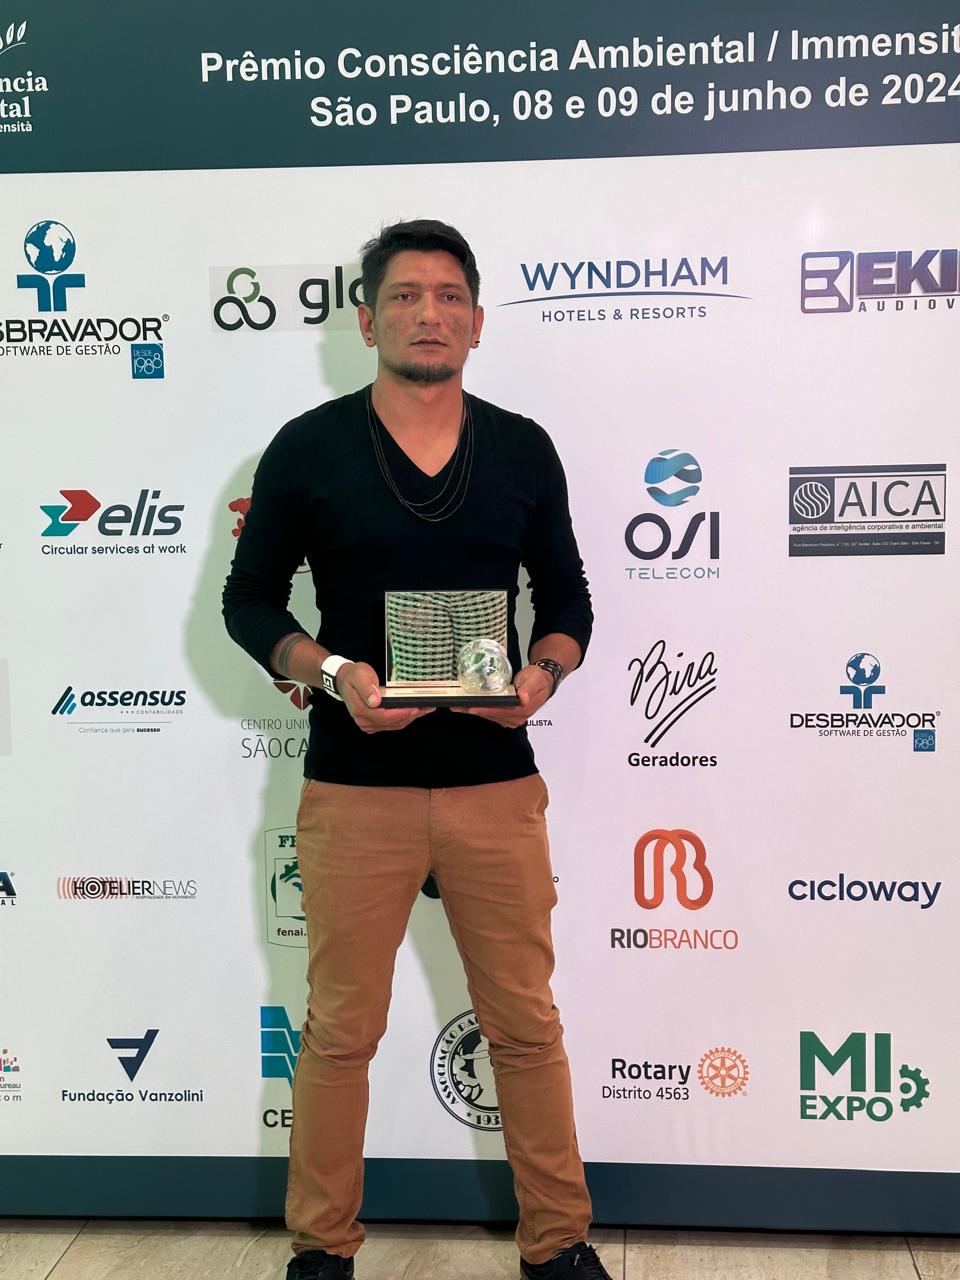 CONAFER PREMIADA: aplicativo Hãmugãy recebe, em São Paulo, prêmio Consciência Ambiental